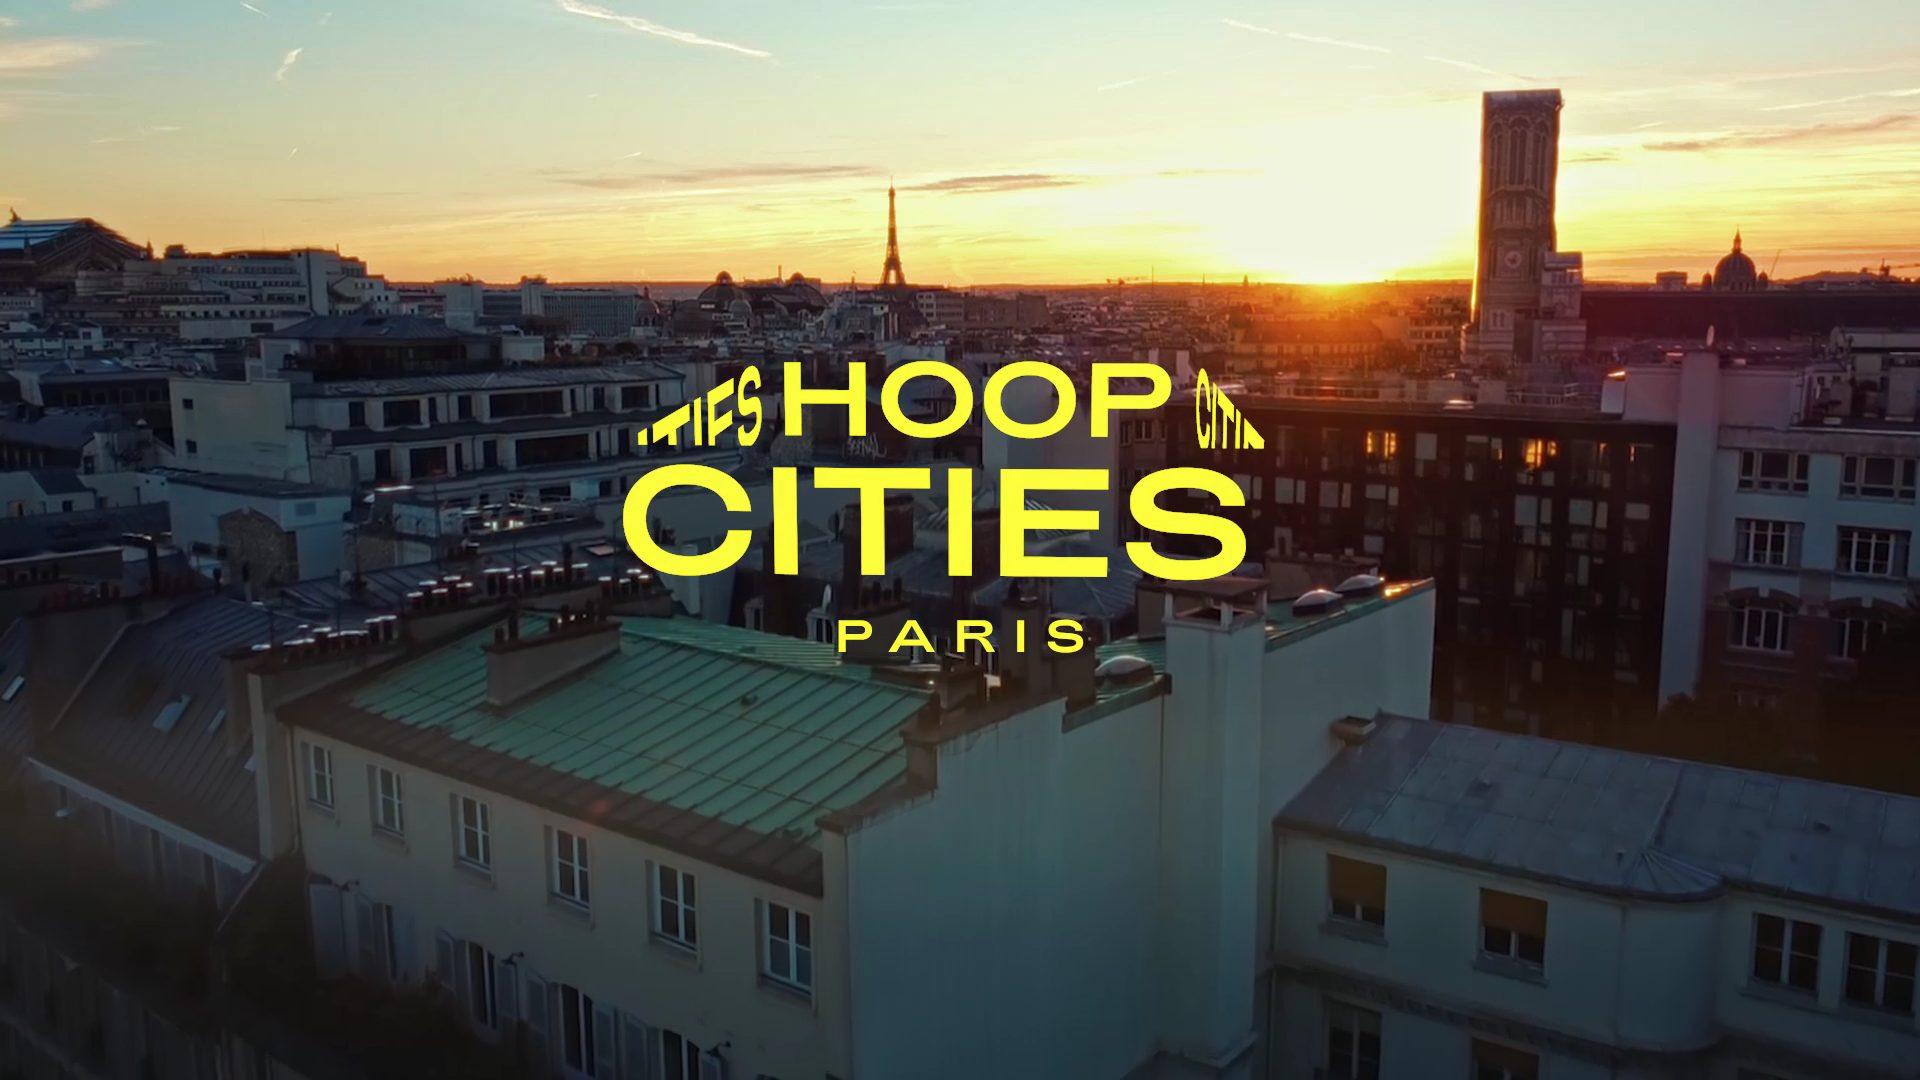 HOOP CITIES PARIS